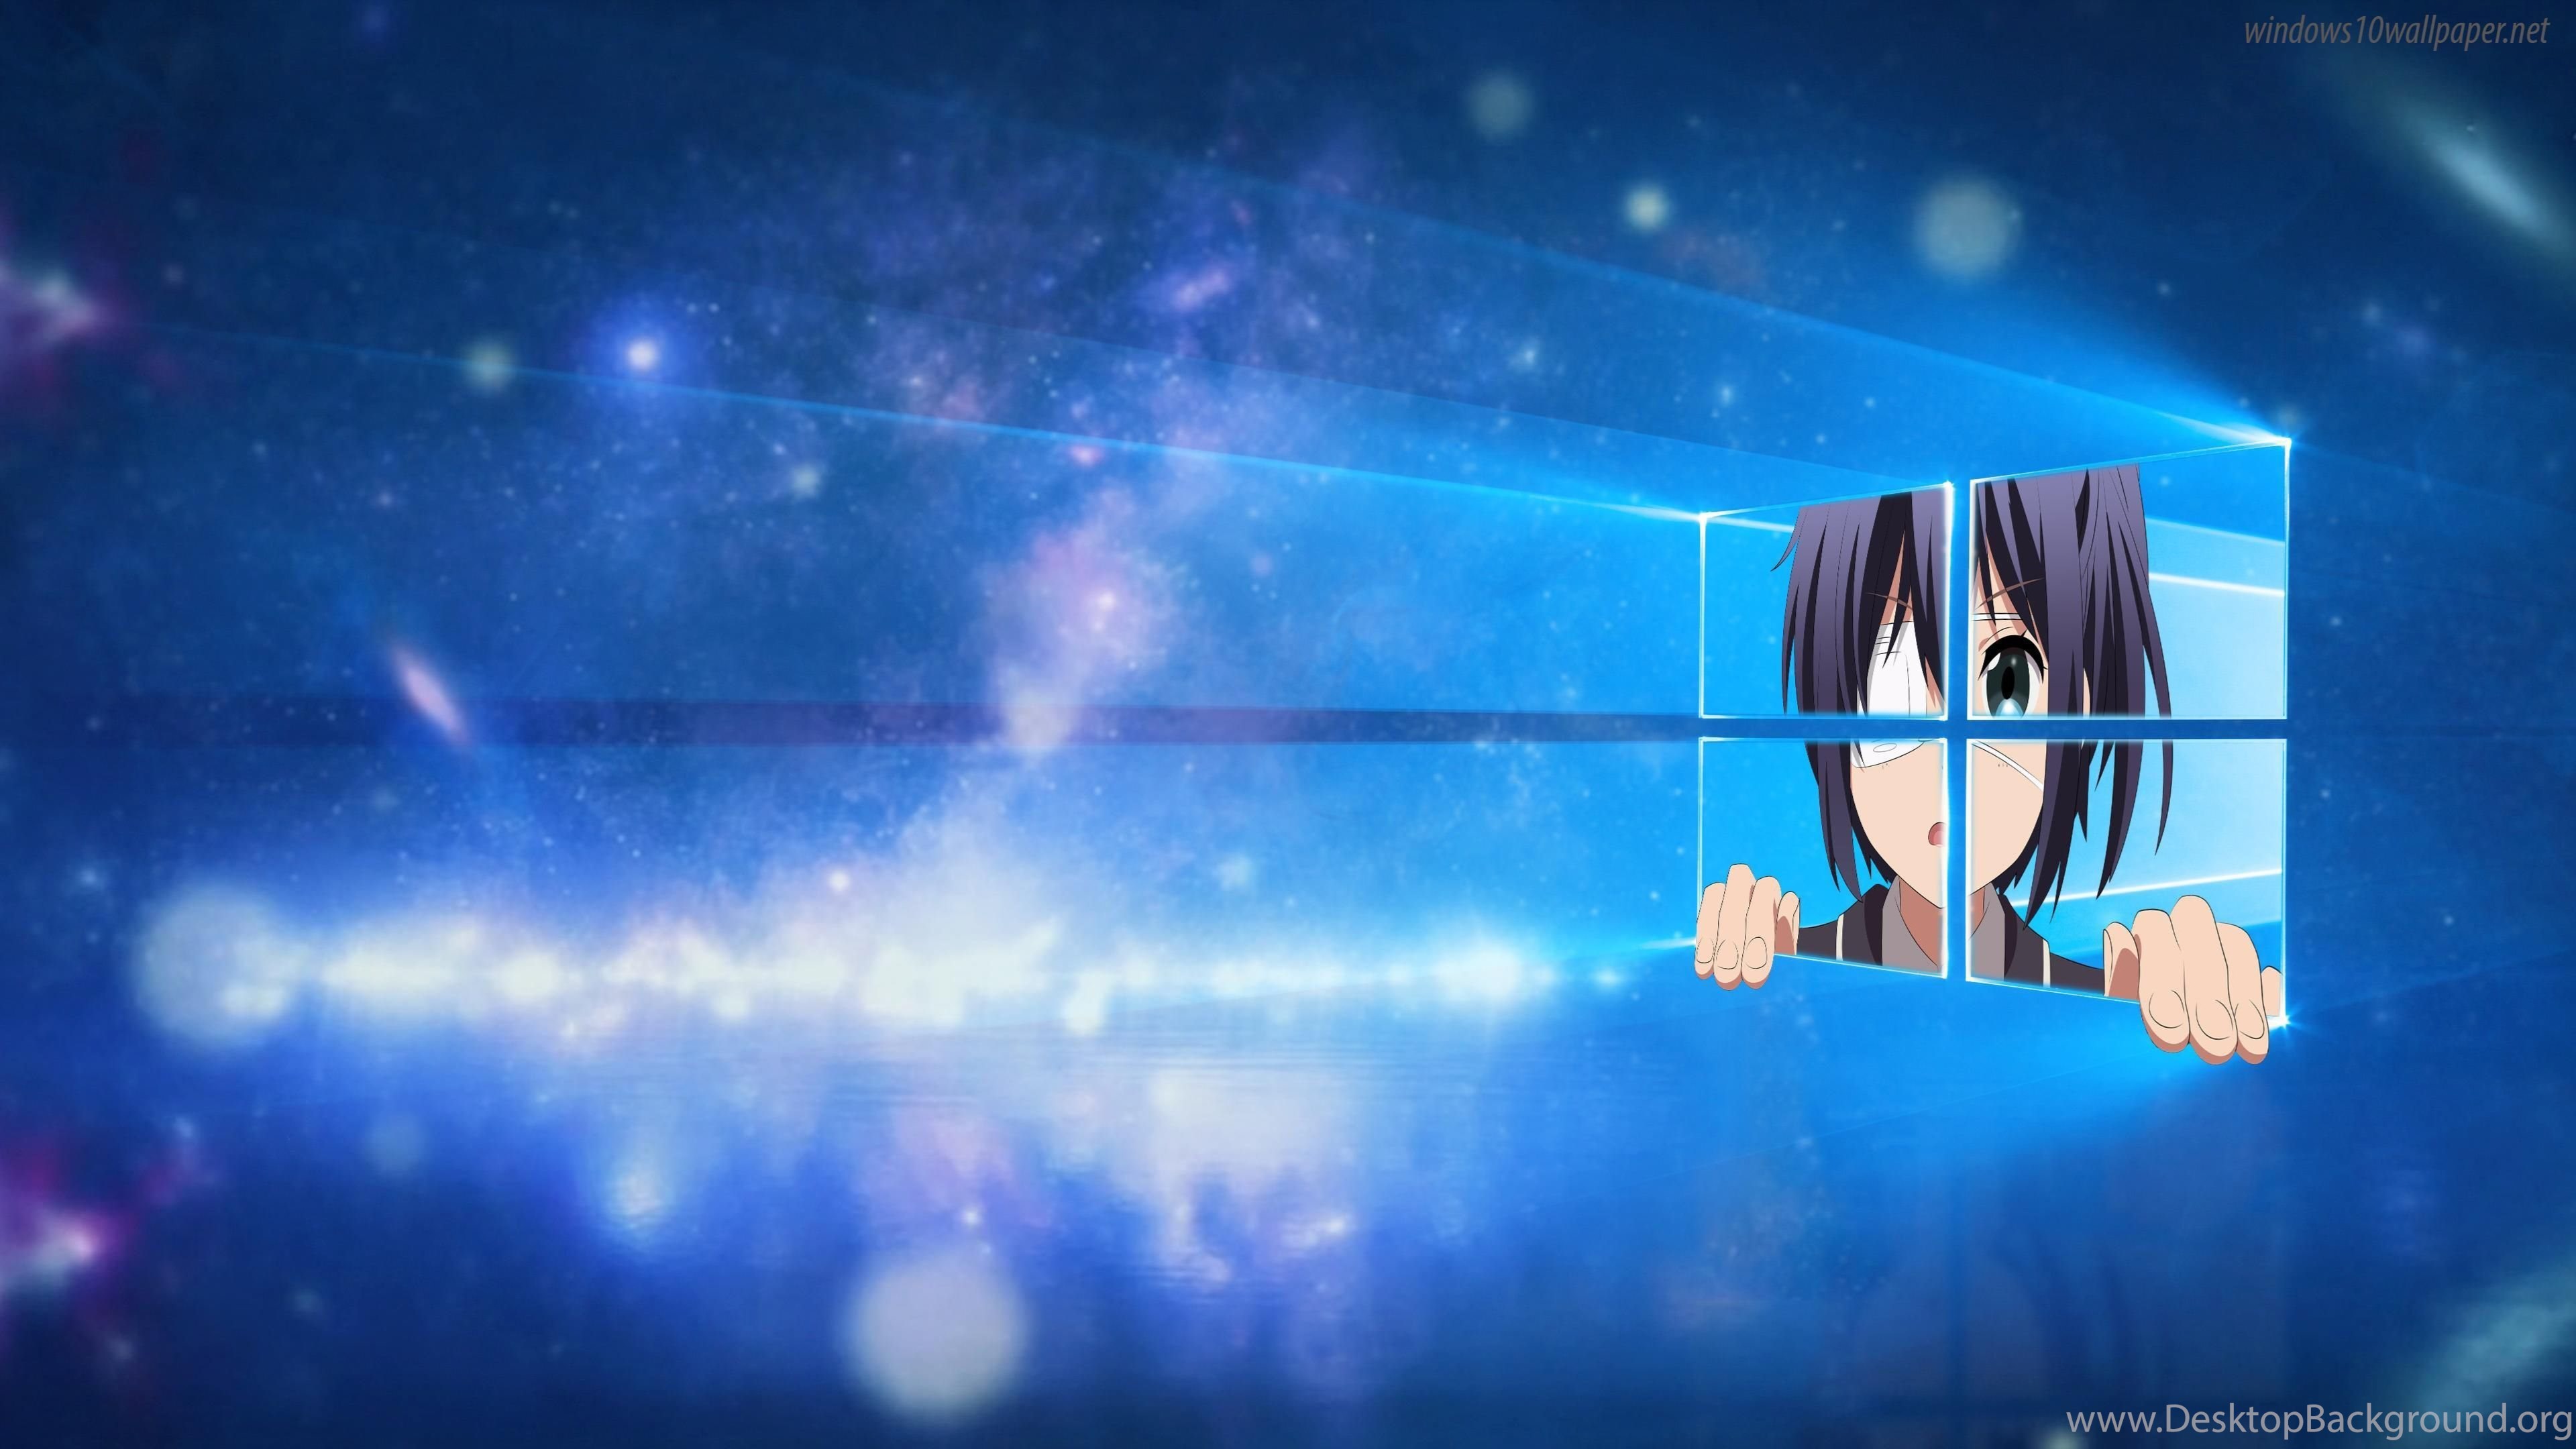 Windows 10 4k Anime Wallpaper Jpg Desktop Background